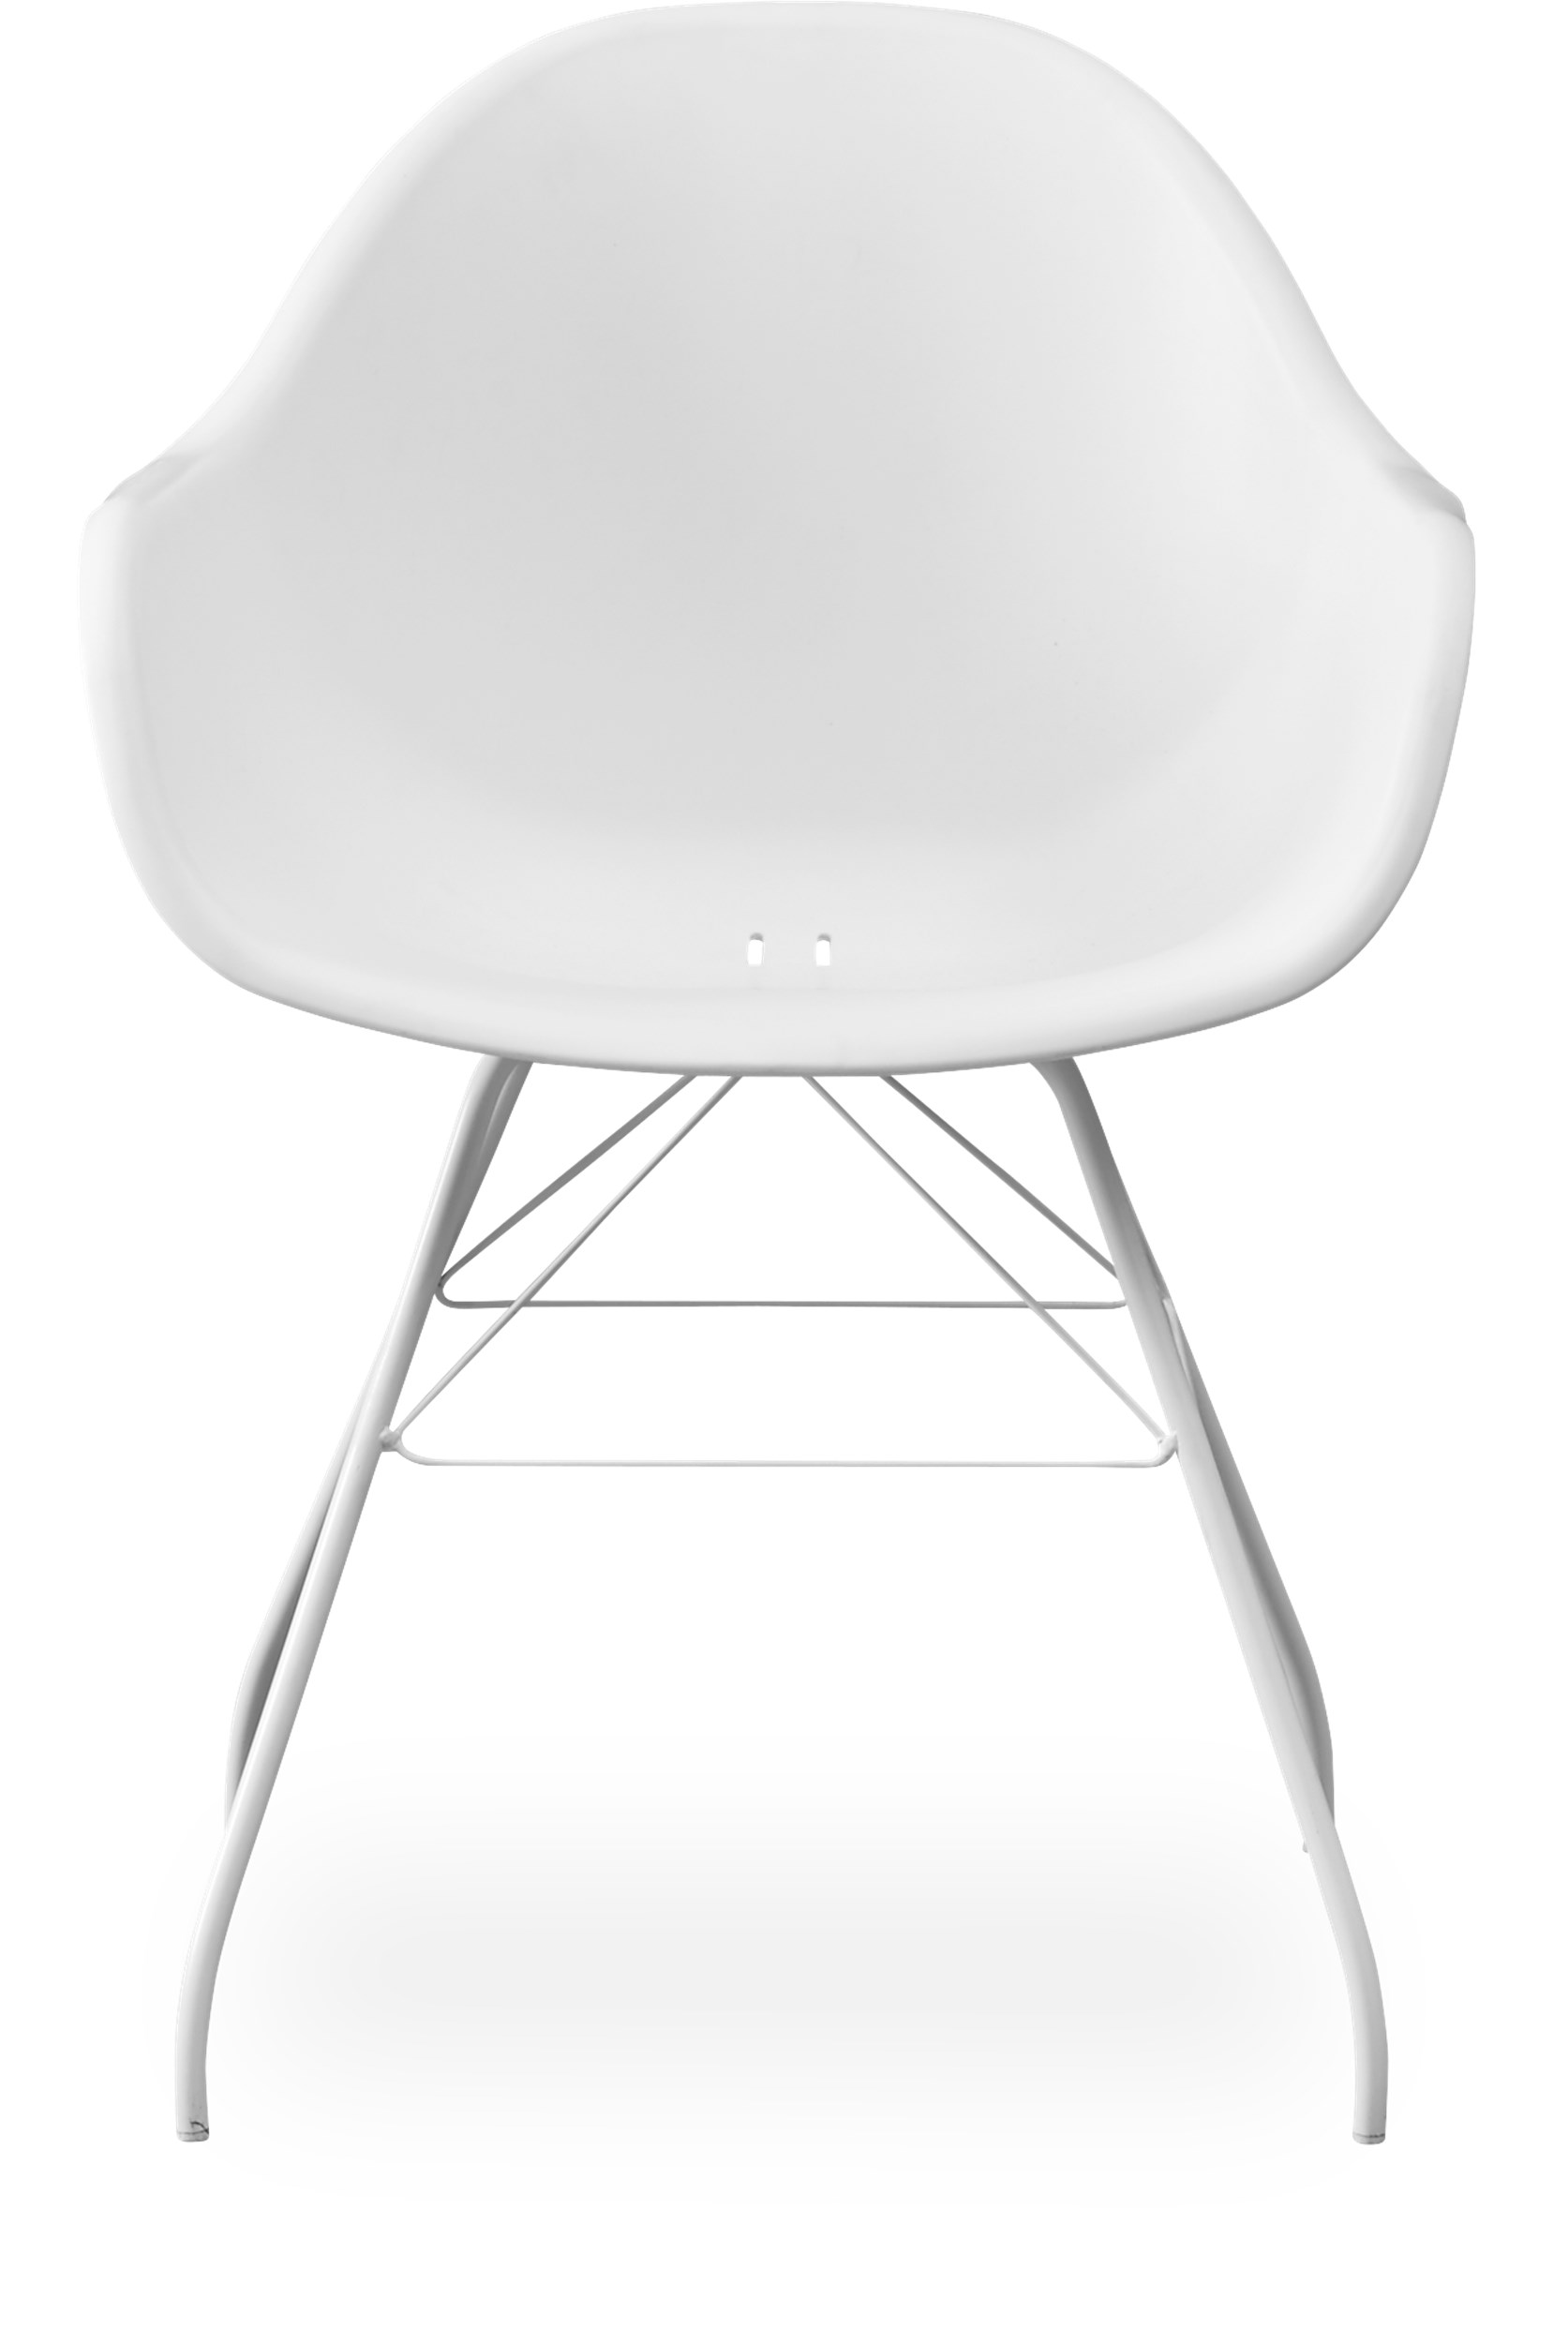 Copenhagen Steel Trädgårdsstol - Skal i vit plast och vit stomme i metall